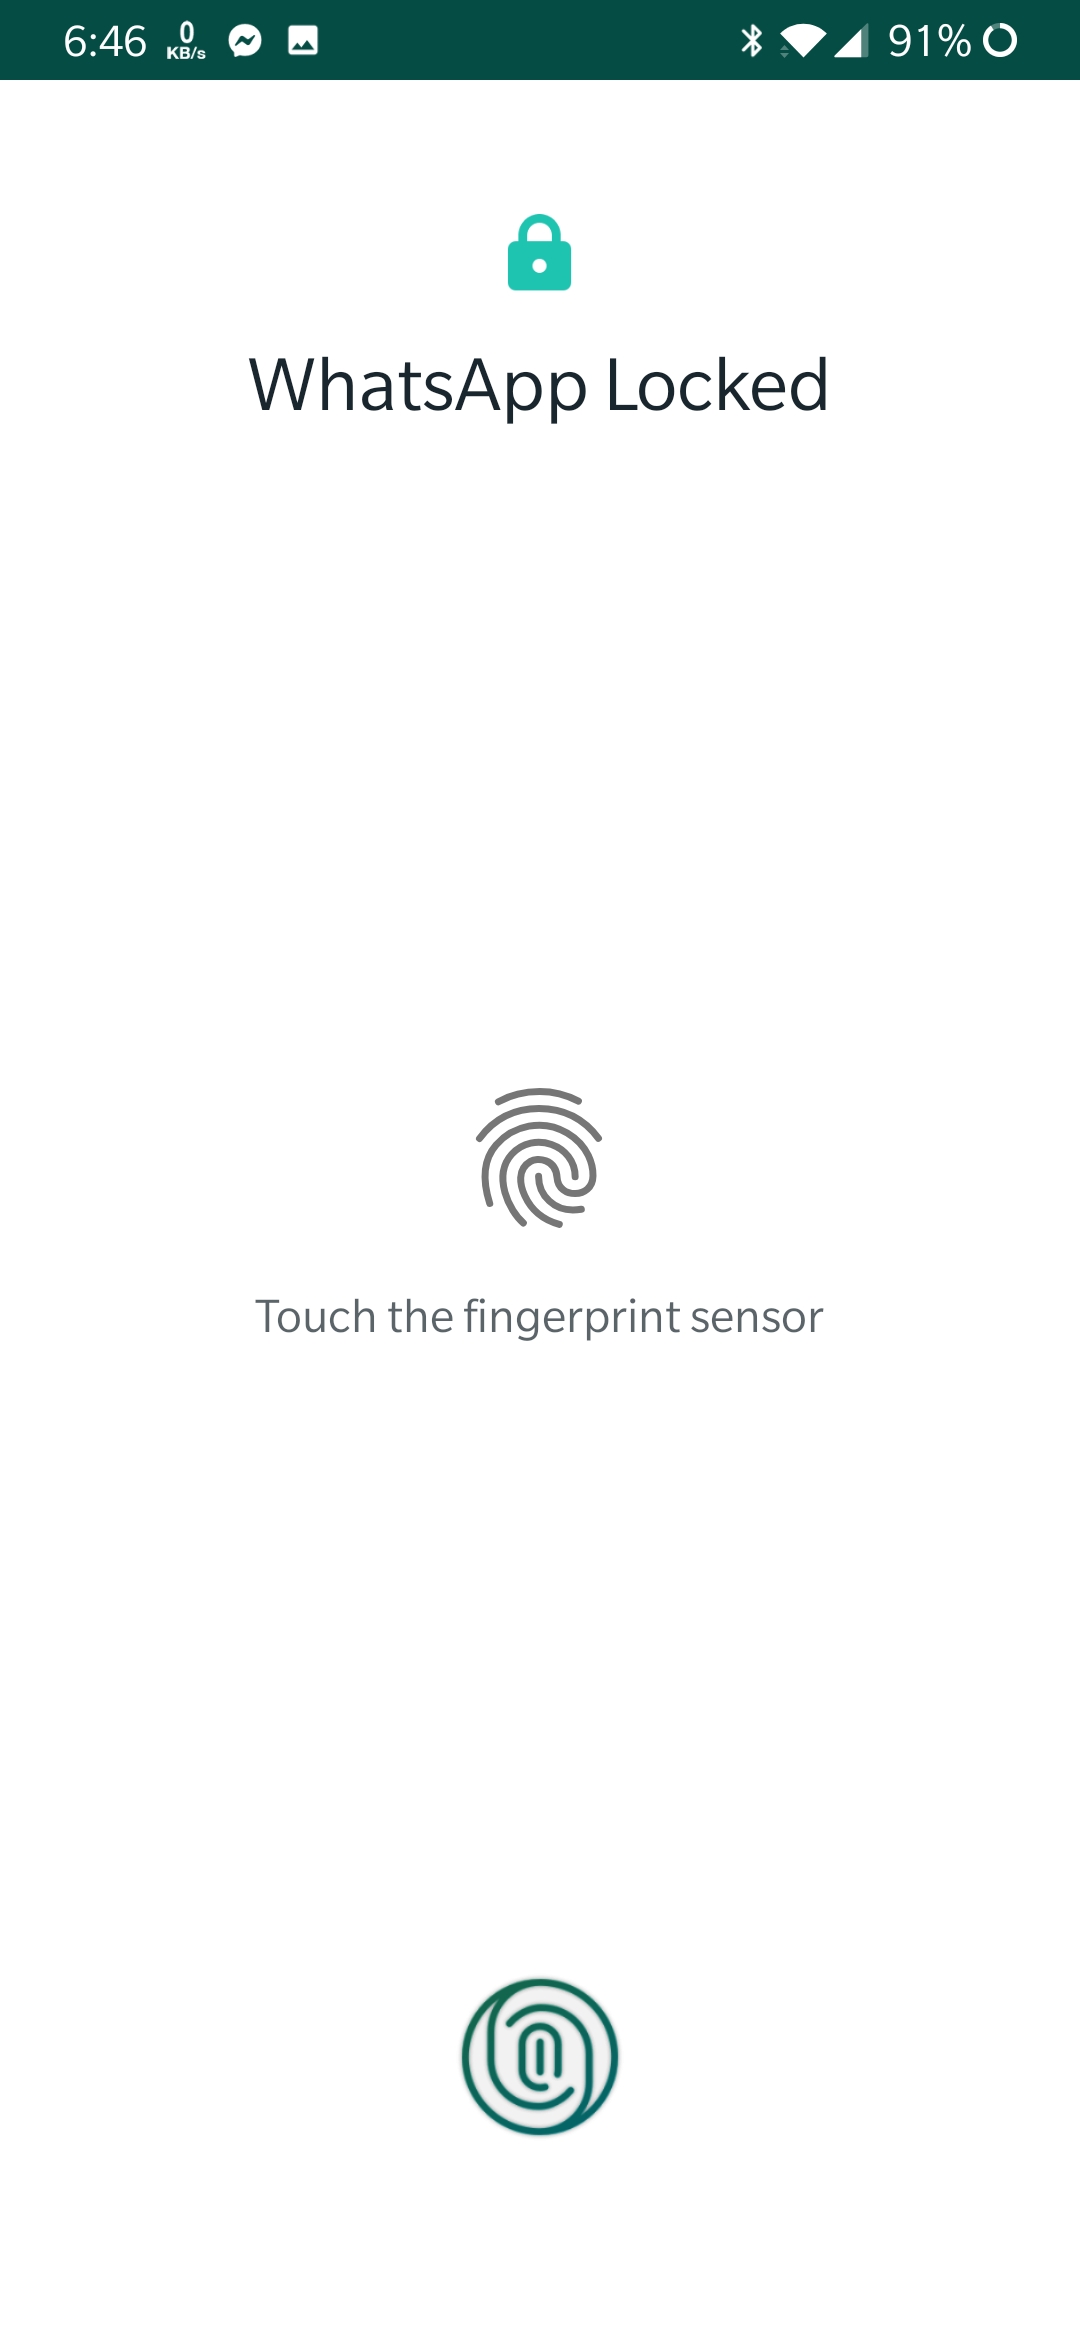 في أحدث إصدار تجريبي له تطبيق واتساب يدعم قفل بصمة الأصابع على أندرويد